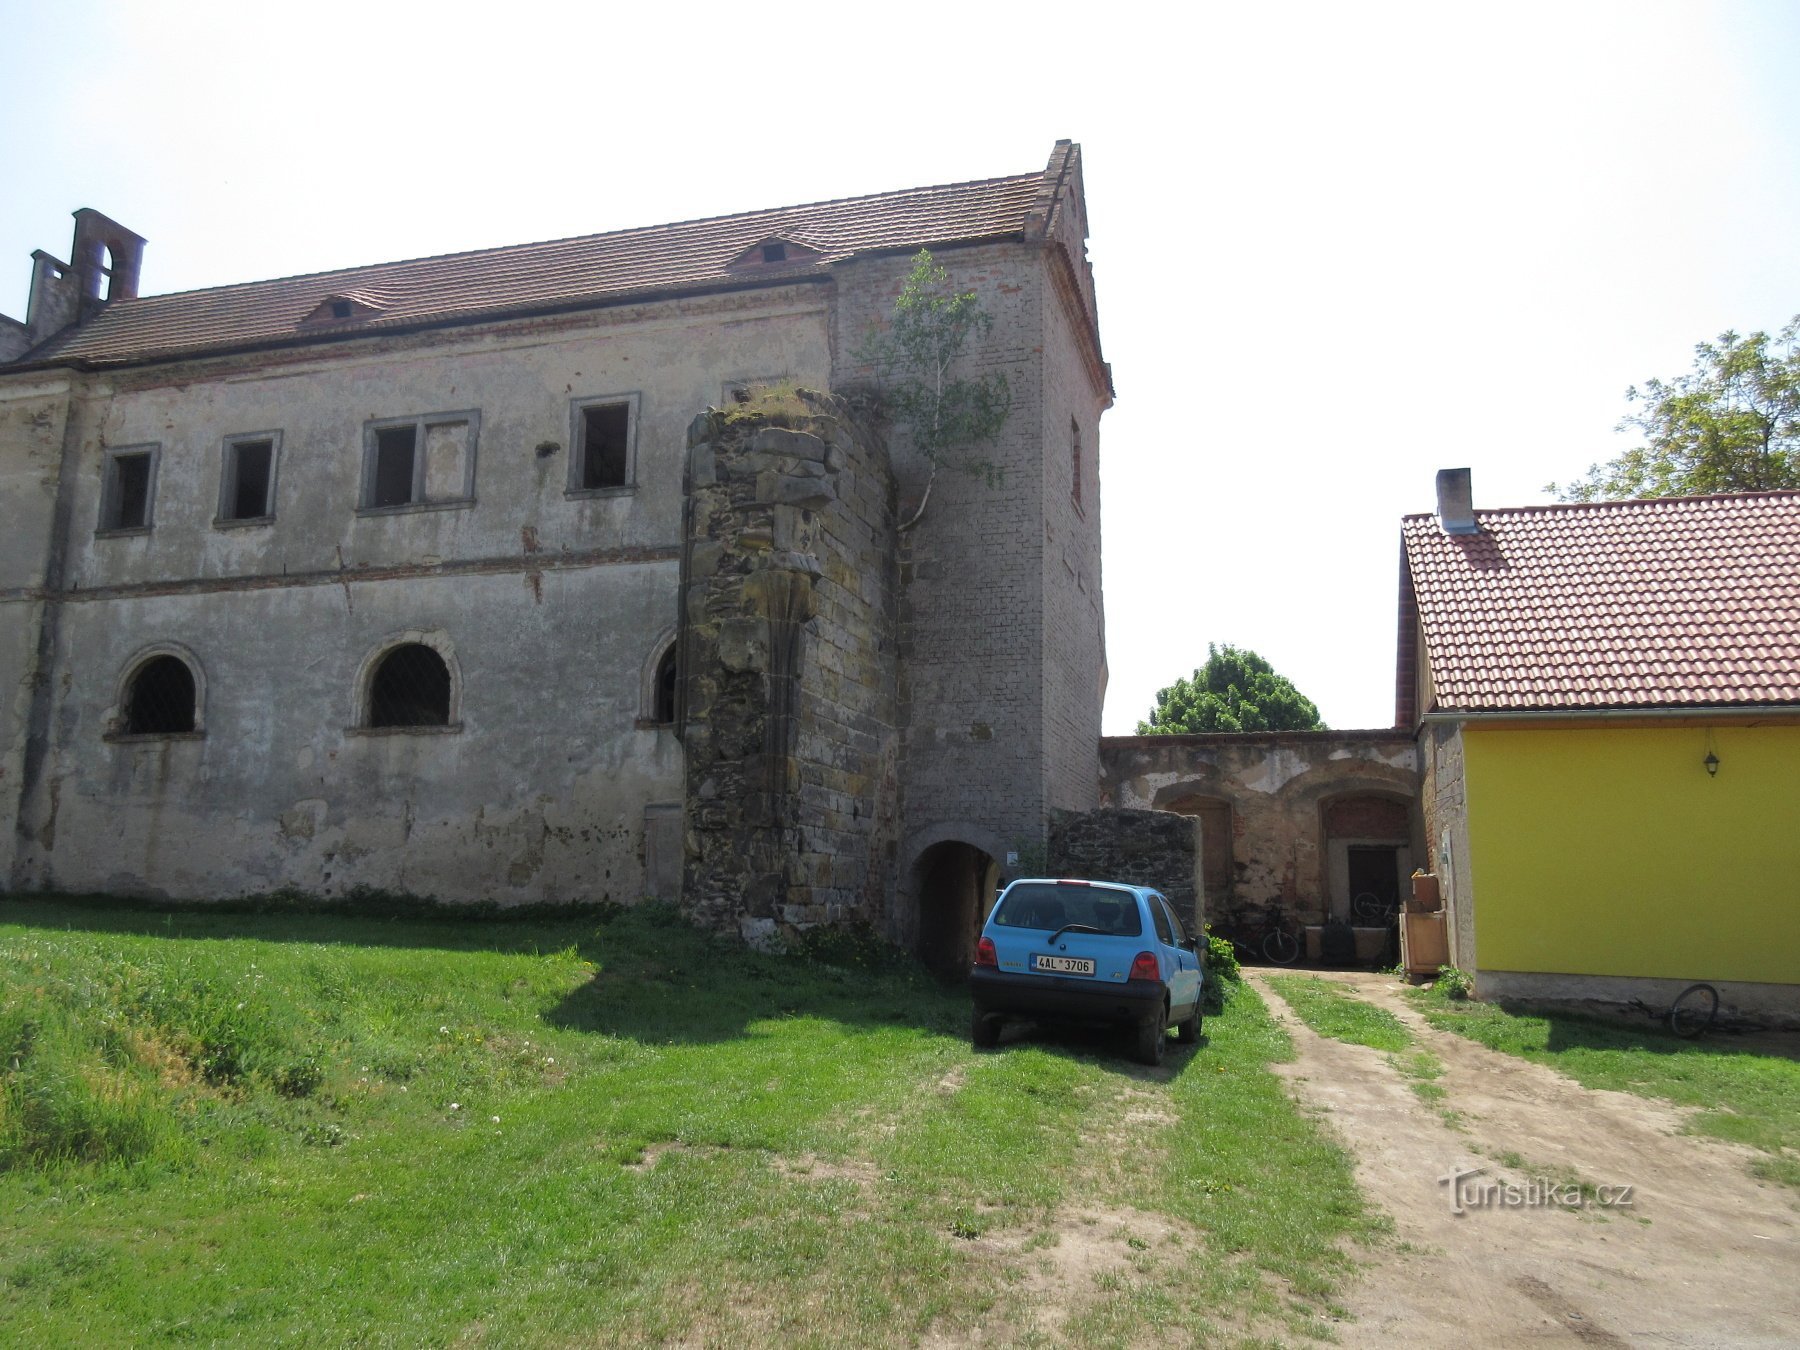 Klášterní Skalice - the ruins of a monastery